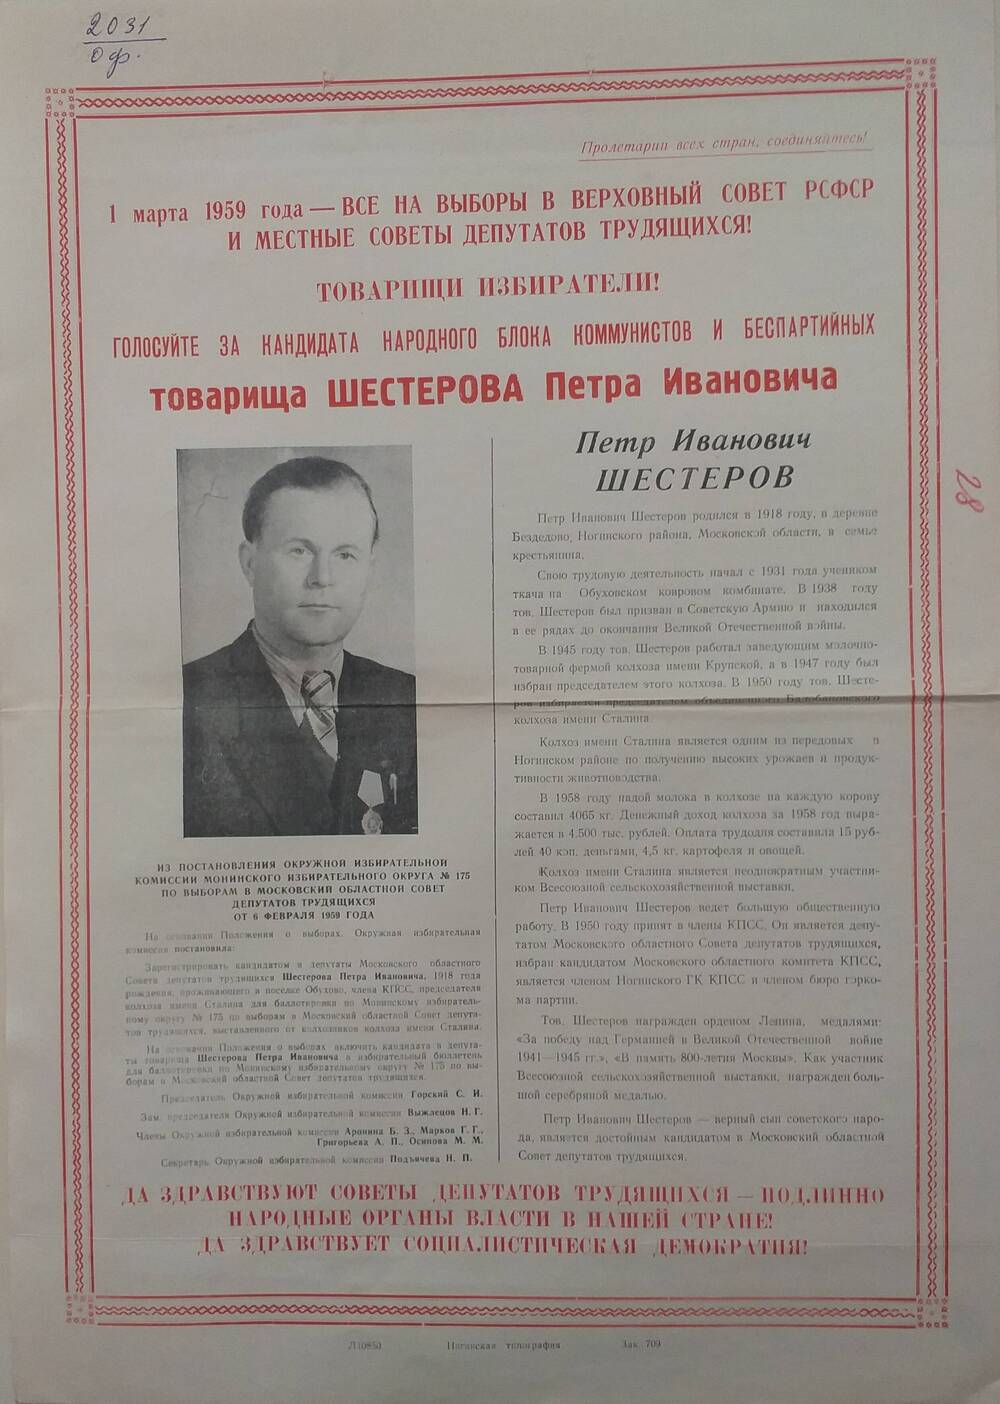 Плакат Призыв к голосованию на выборах 1 марта 1959 года за товарища Шестерова Петра Ивановича - председателя объединённого Балобановского колхоза имени Сталина, январь 1959 года.